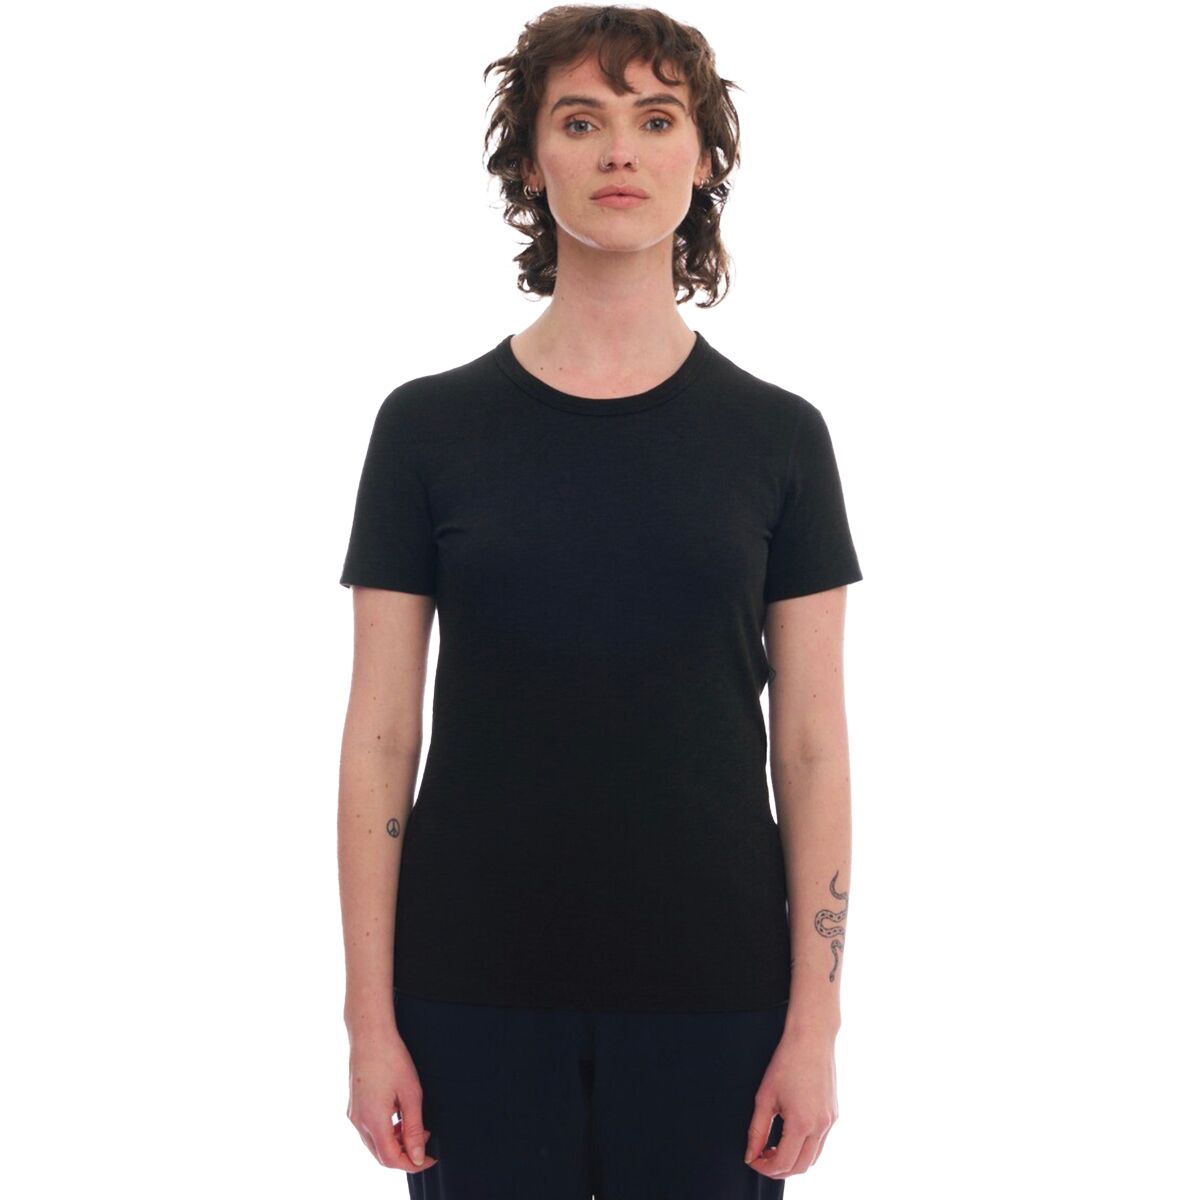 Artilect Artilectual T-Shirt - Women's - Clothing